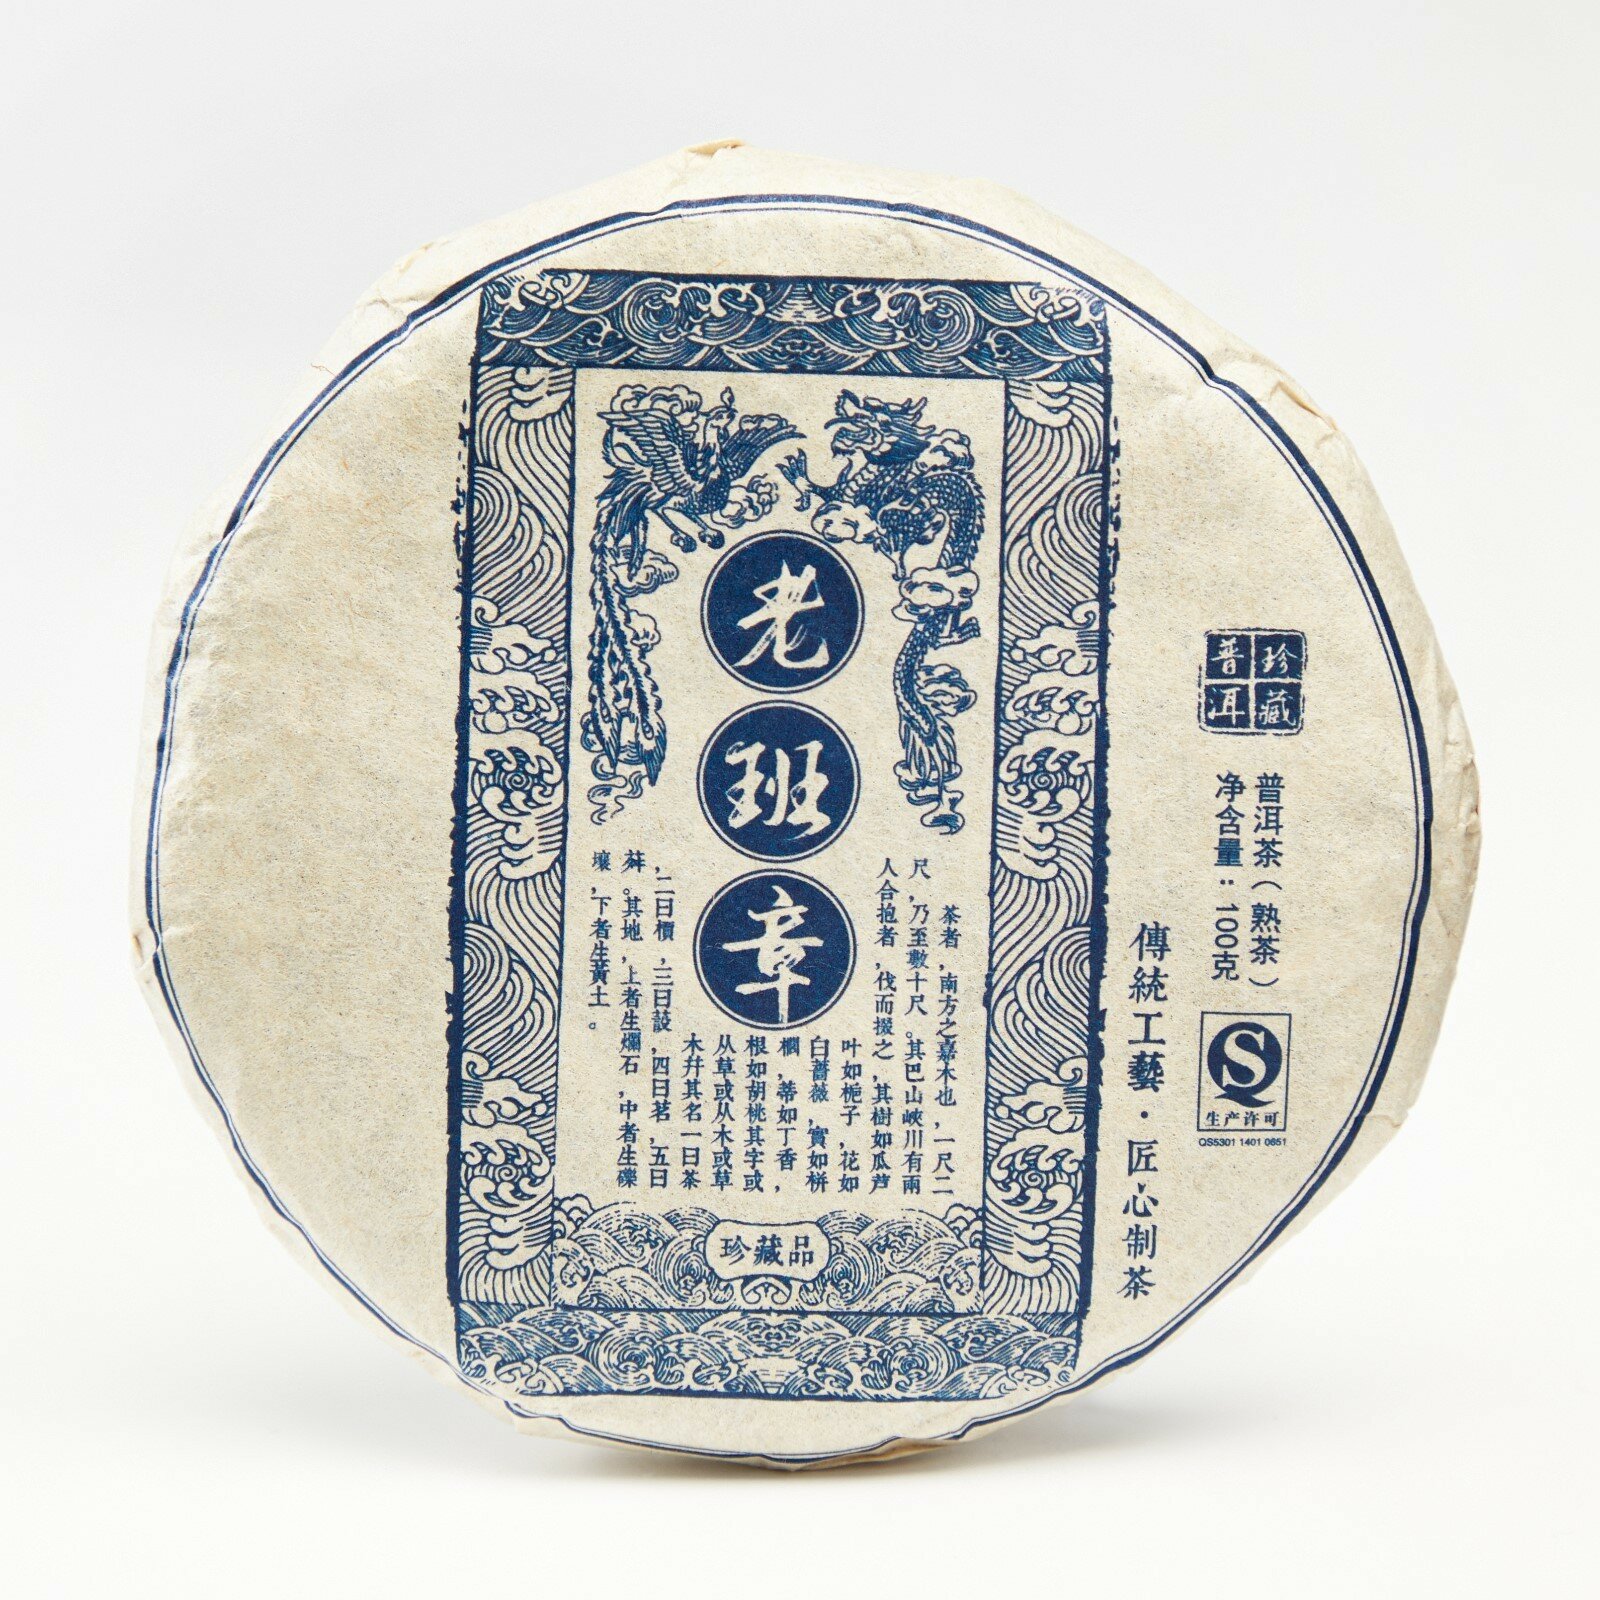 Китайский выдержанный чай "Шу Пуэр. Lao ban zhang", 100 г, 2014 г, Юньнань, блин